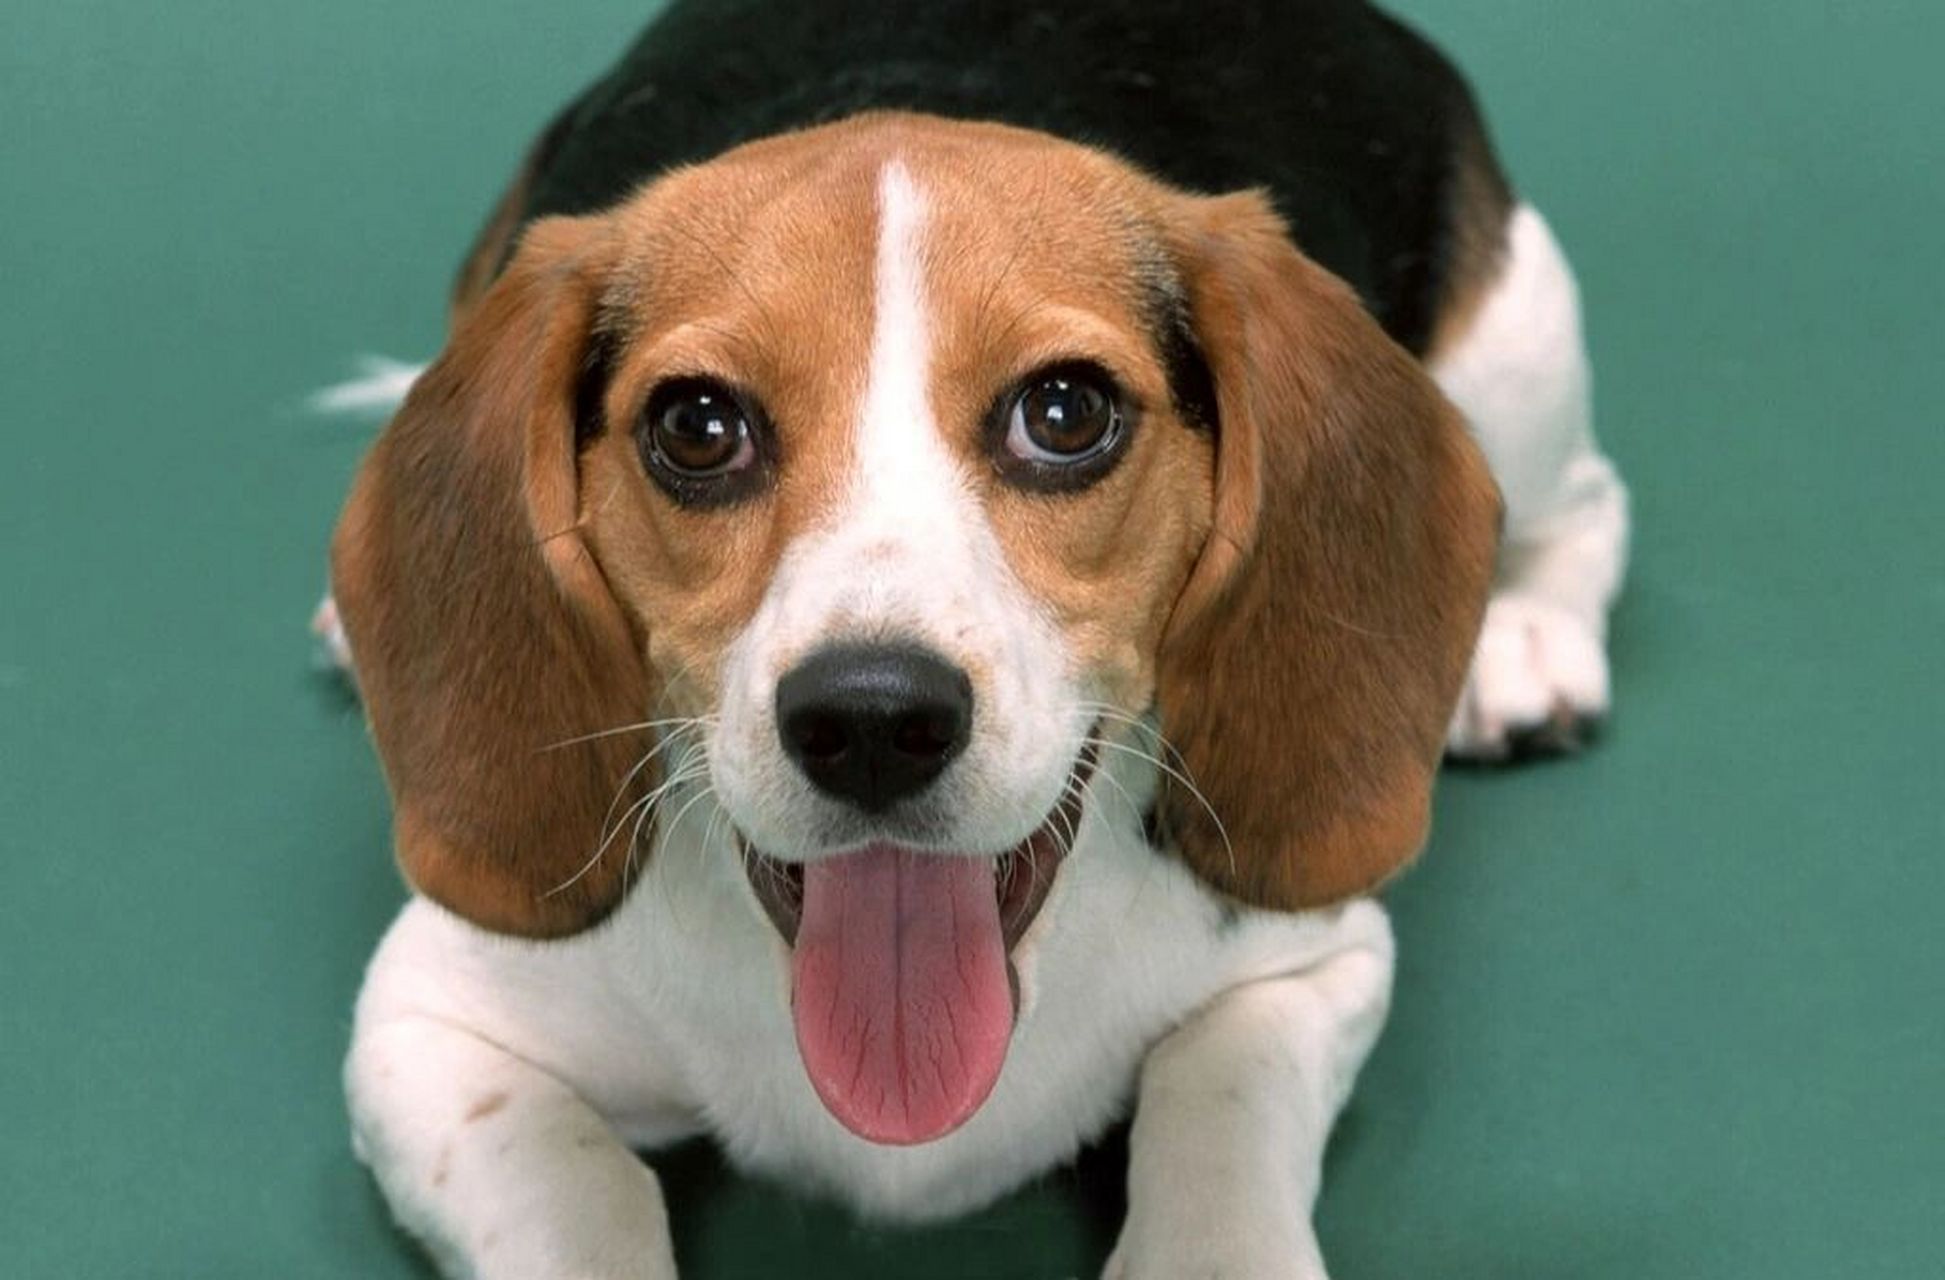 比格犬——实验用犬 比格犬是一种中型犬,原名米格